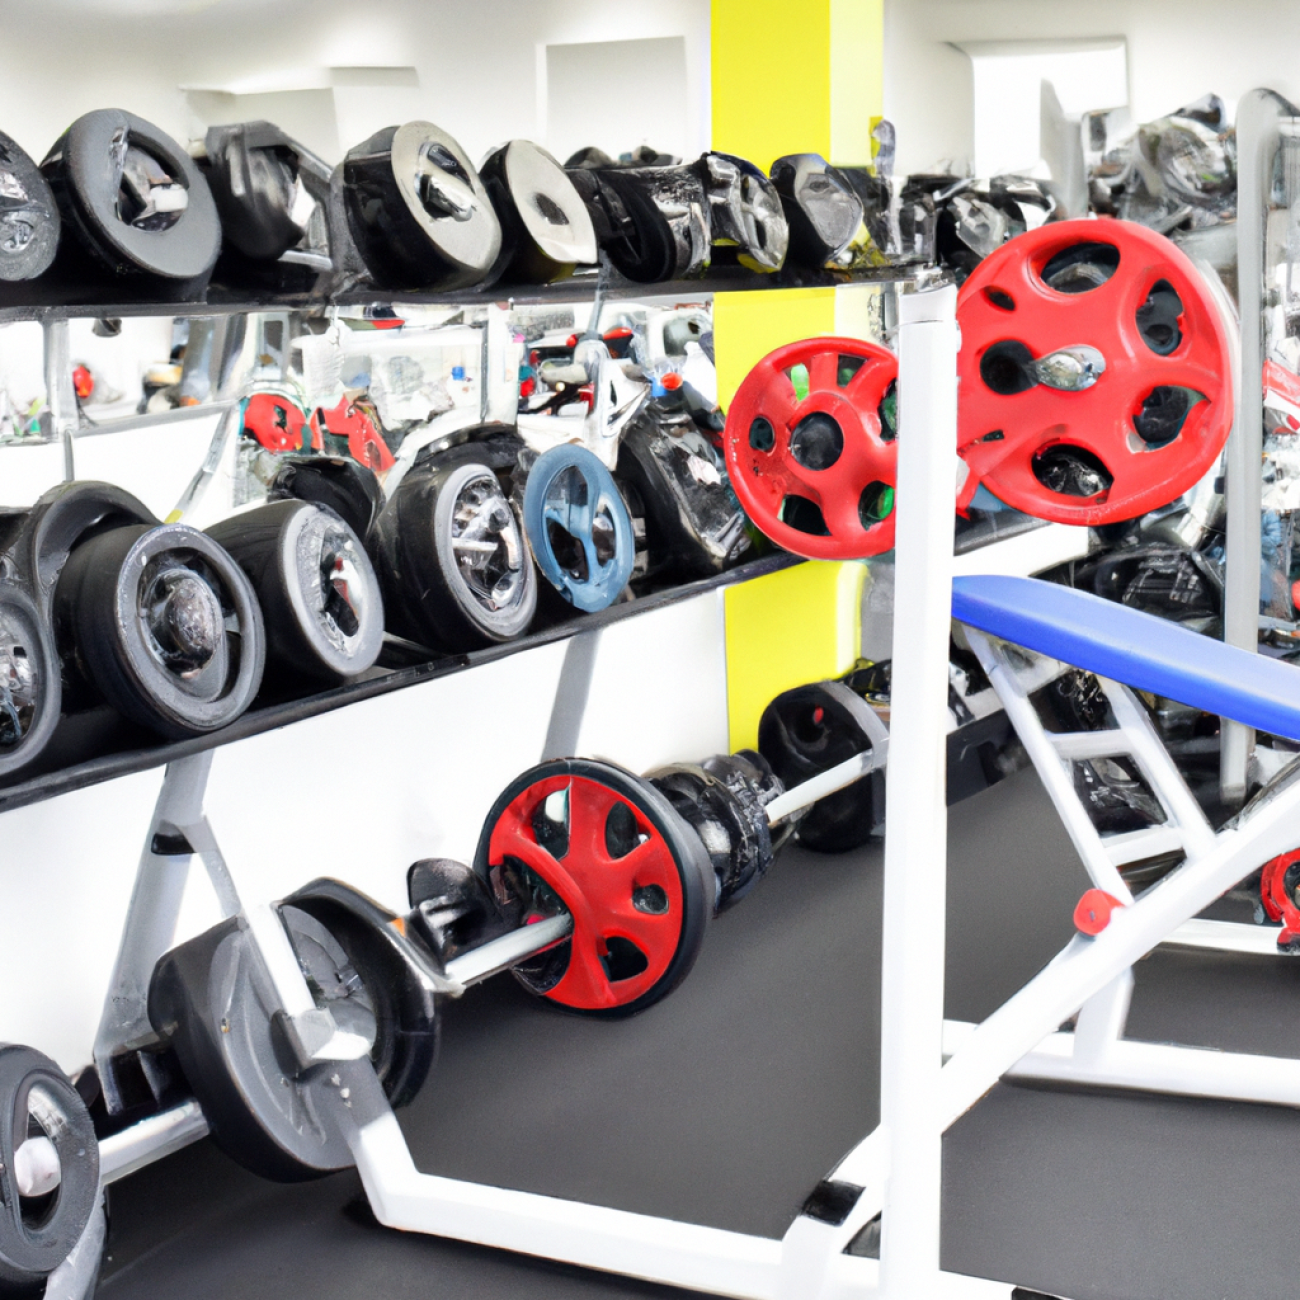 - Výběr vhodného fitness centra v Krči: Klíčová kritéria a doporučení